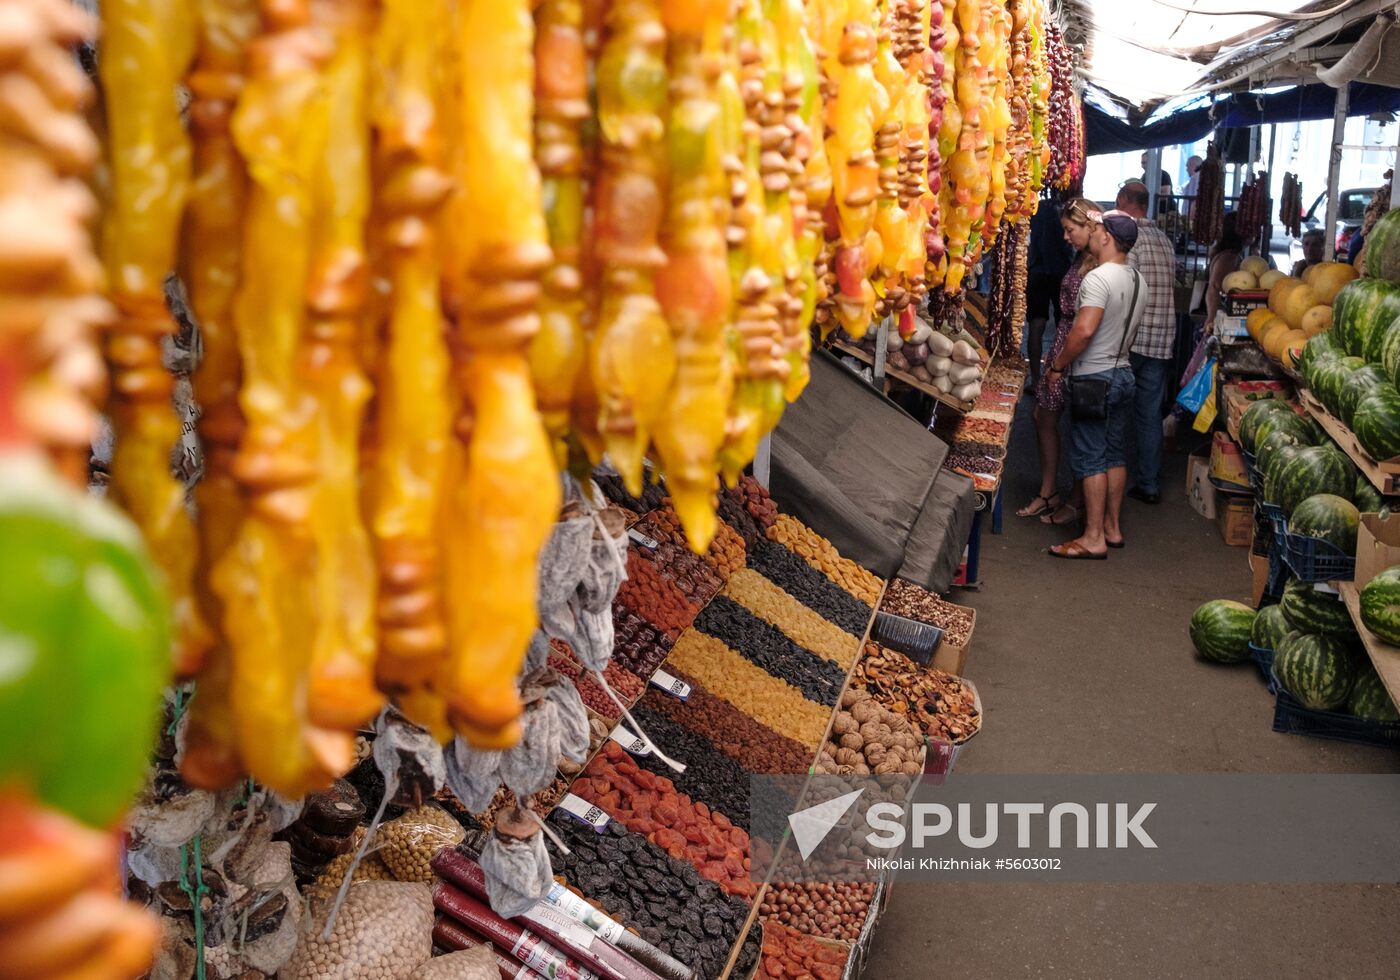 Fruits and vegetables on Krasnodar's central market